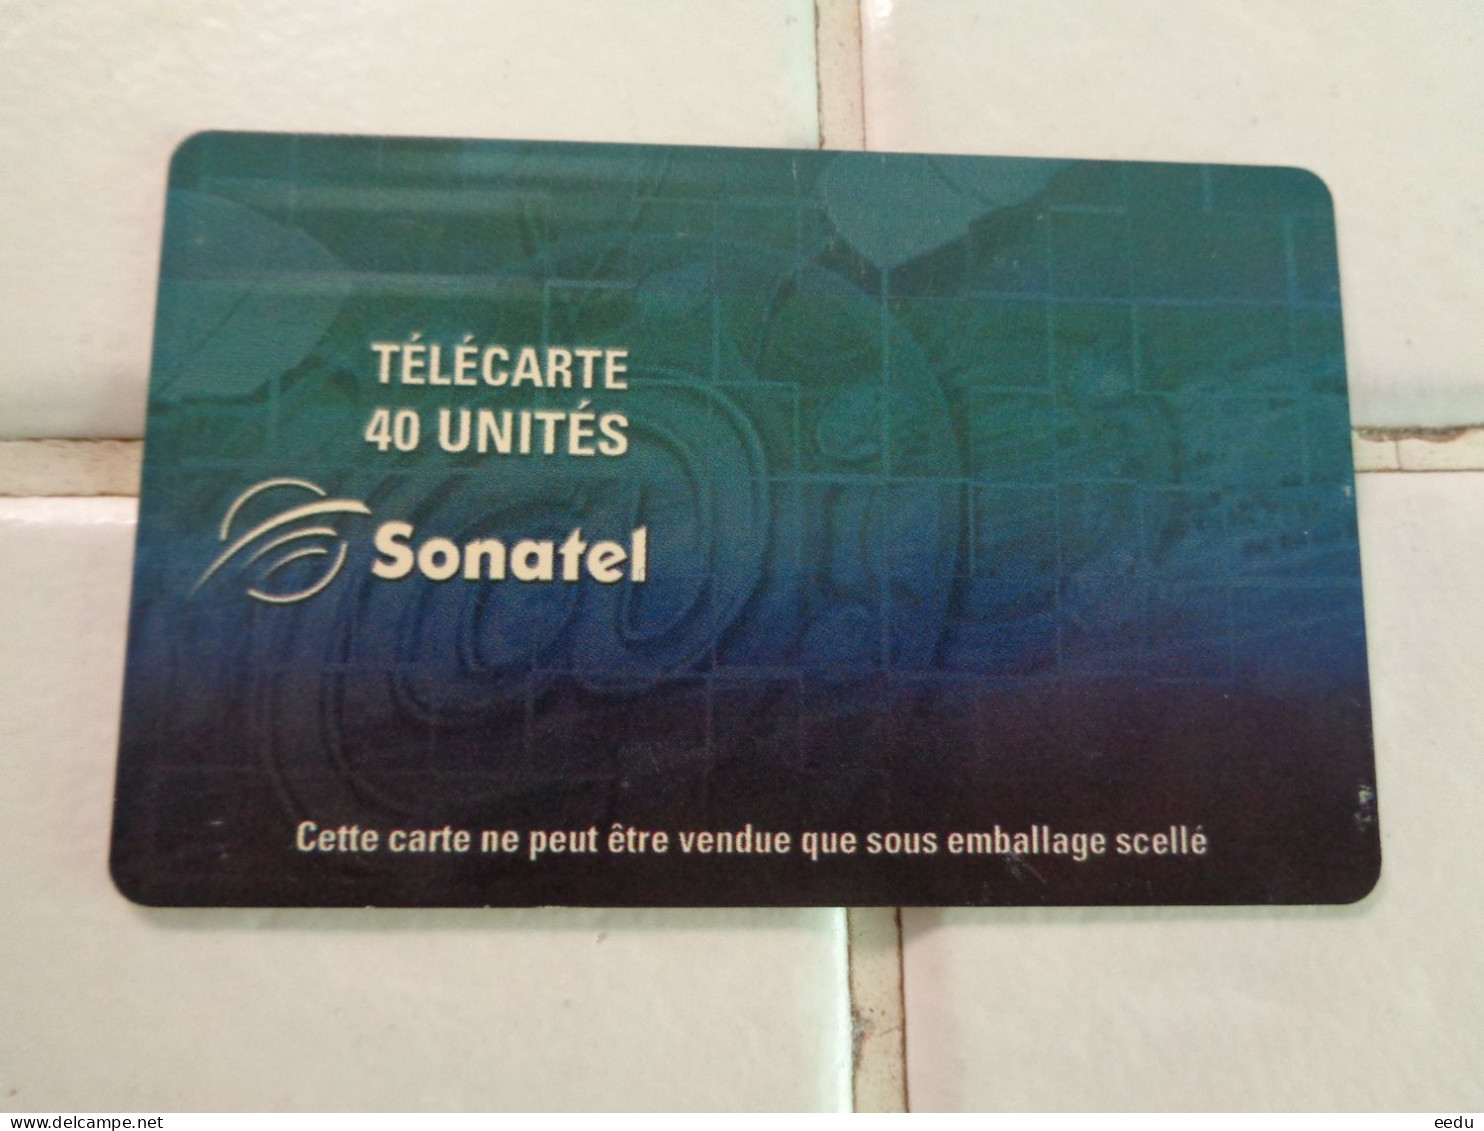 Senegal Phonecard - Senegal